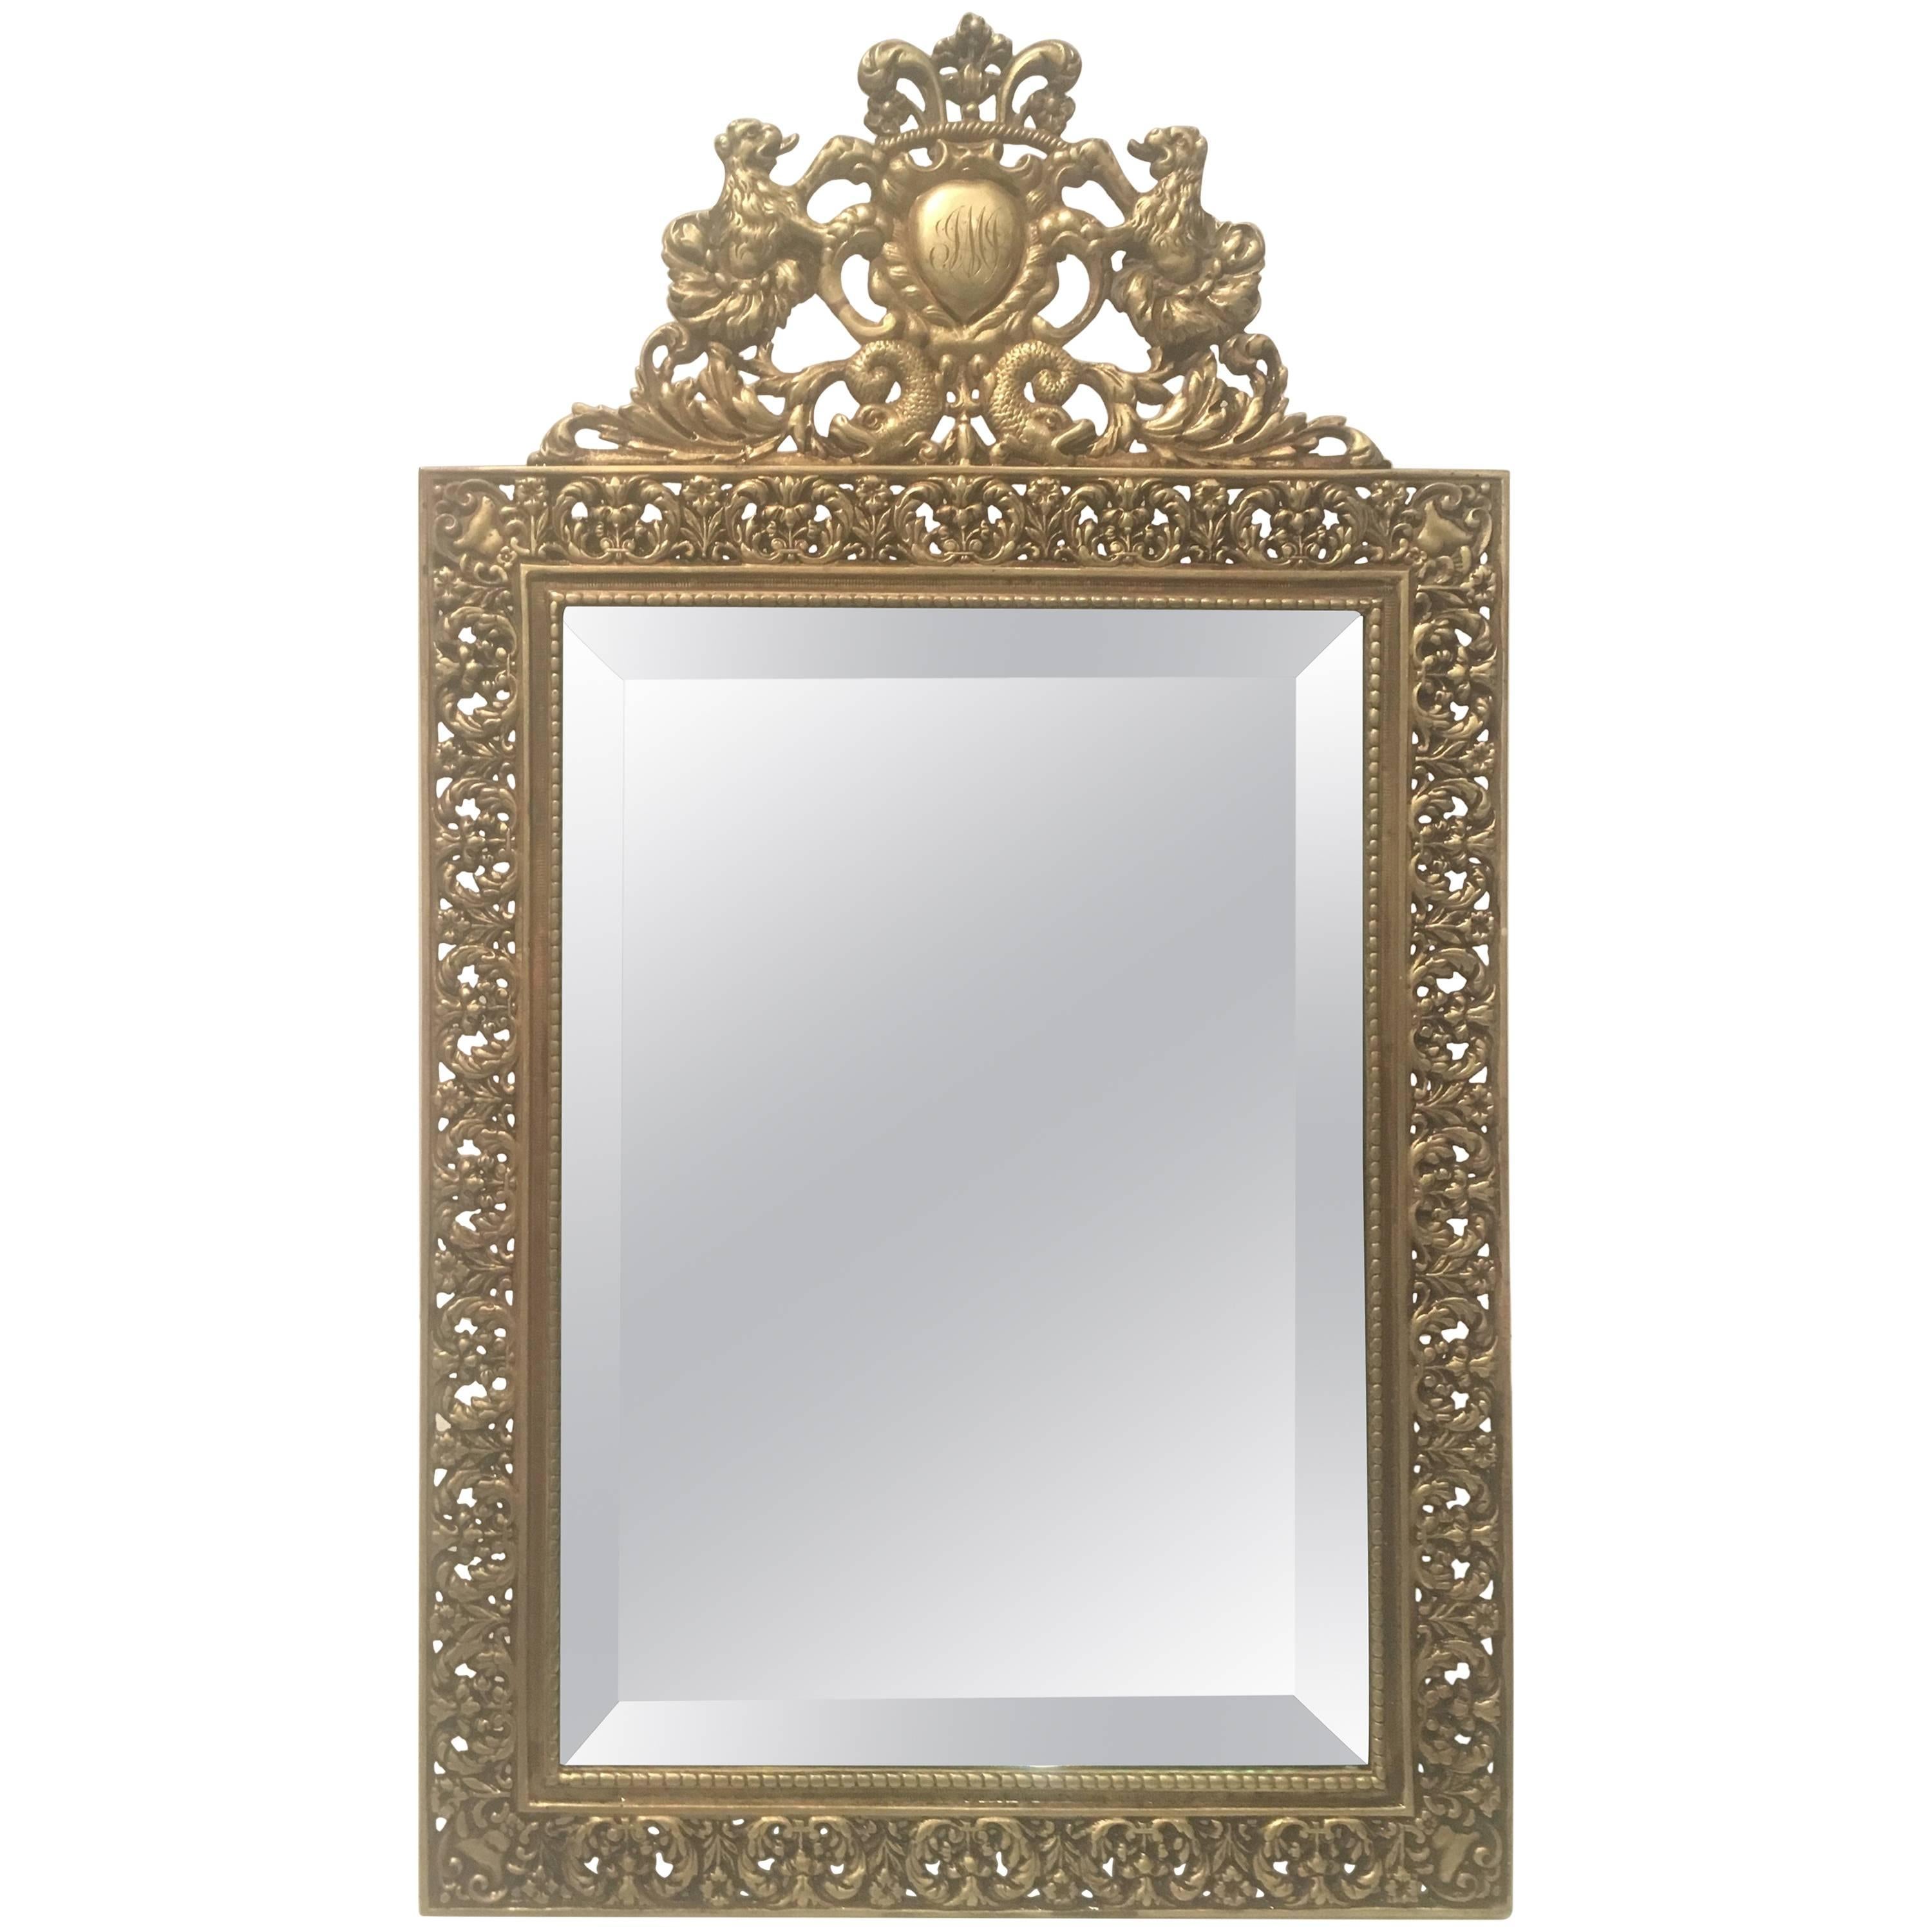 Stunning Antique English Brass Vanity Mirror